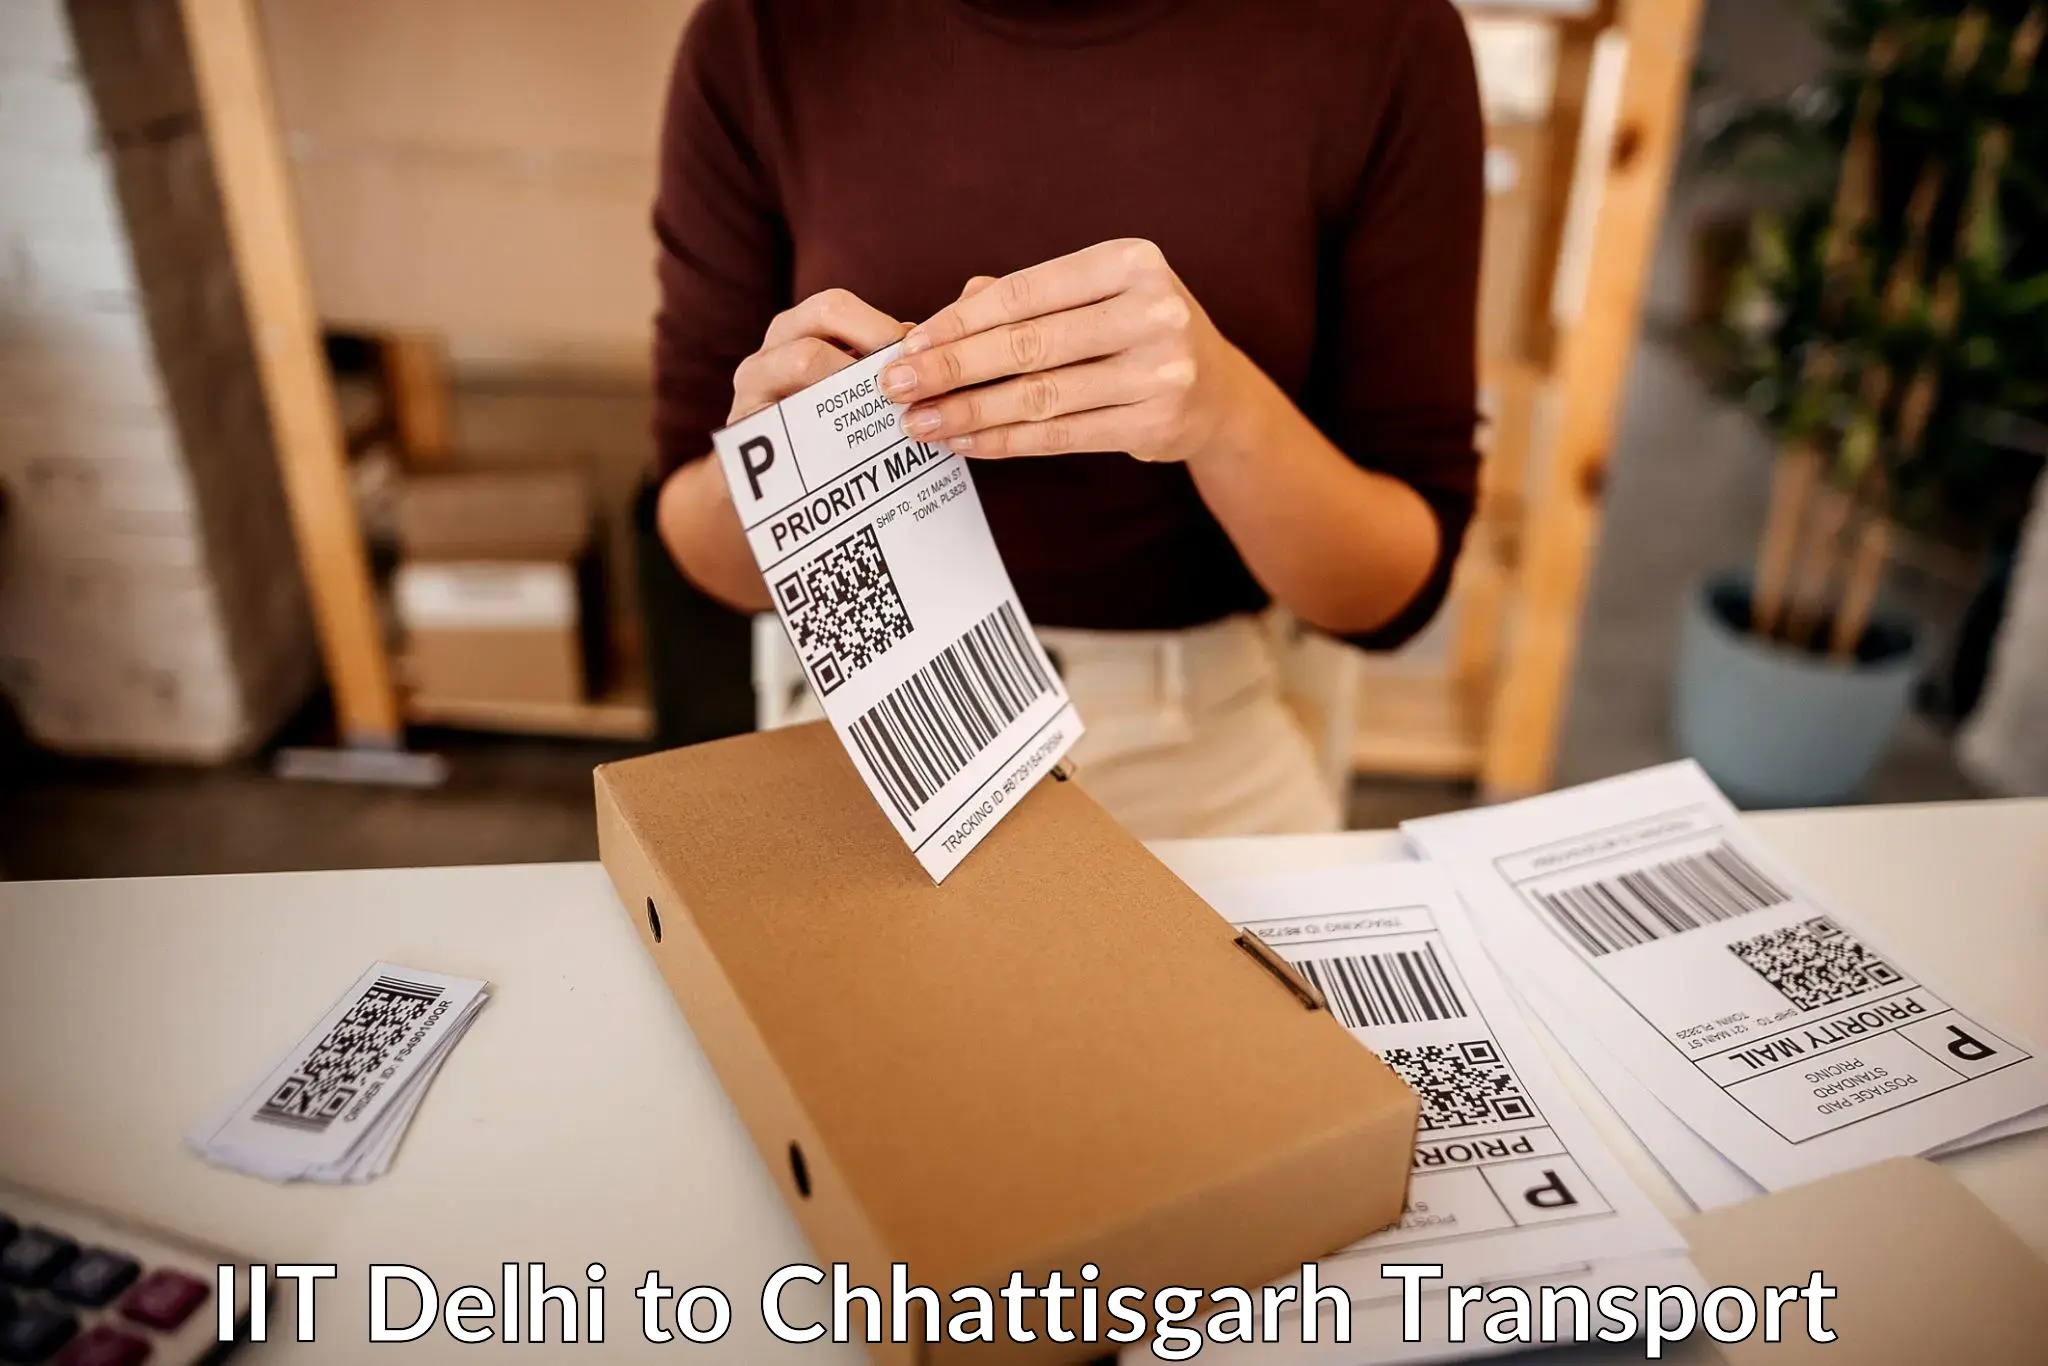 Cargo transport services in IIT Delhi to Kharora